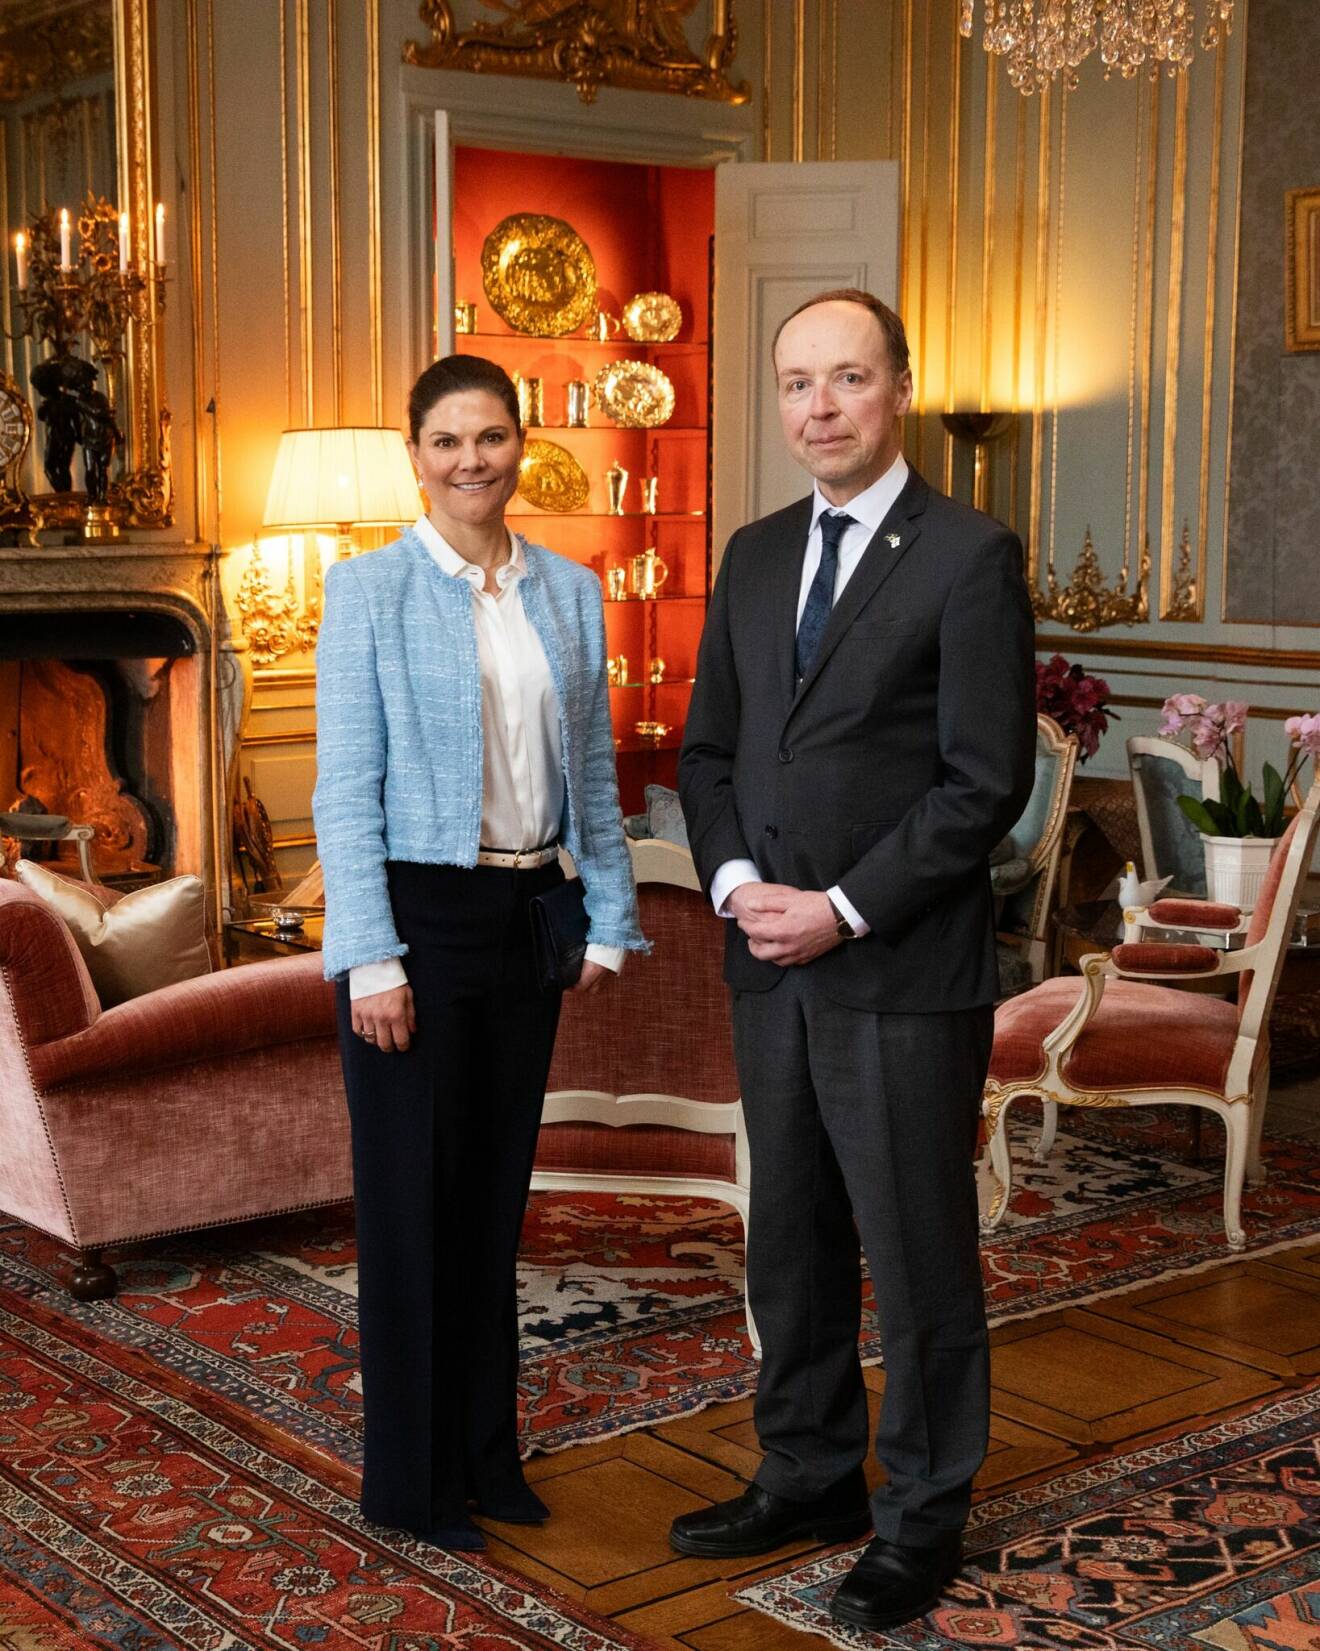 Kronprinsessan Victoria med Finlands talman Jussi Halla-aho i Prinsessan Sibyllas våning på Stockholms slott